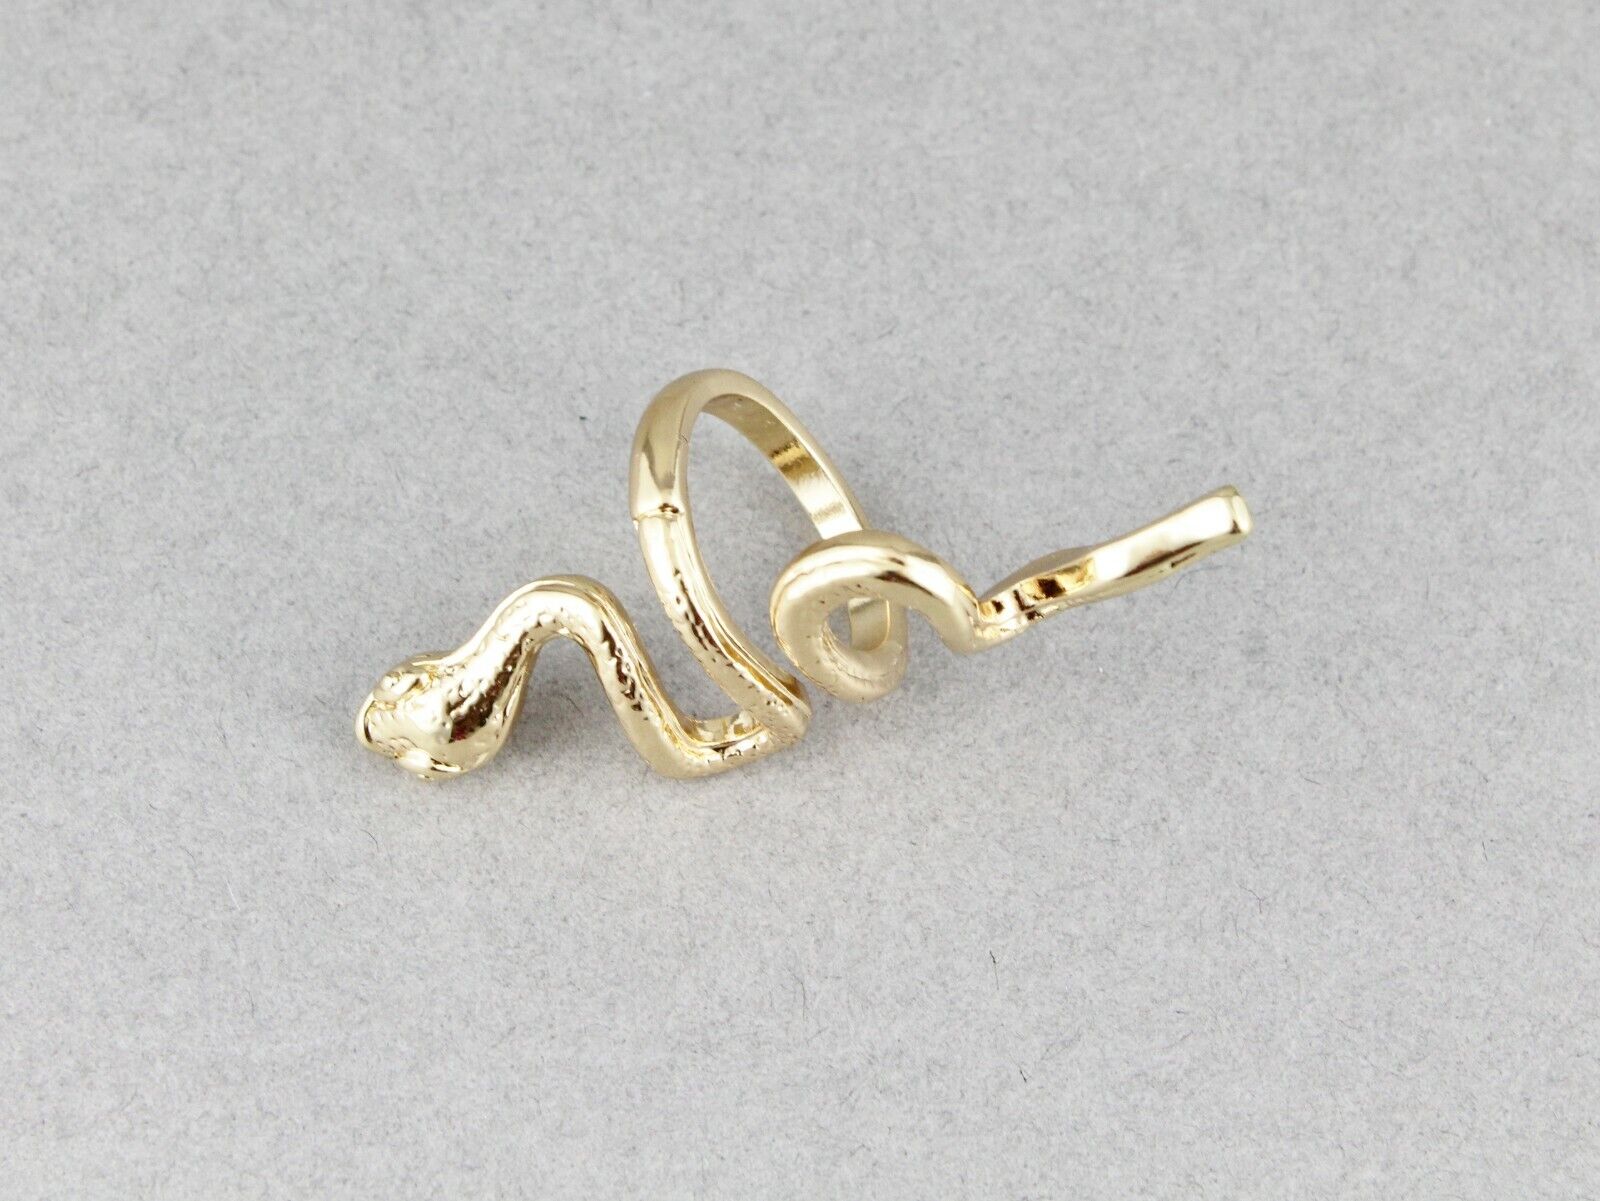 Gold snake ring asp cleopatra toga wrap serpent adjustable size medusa  statement